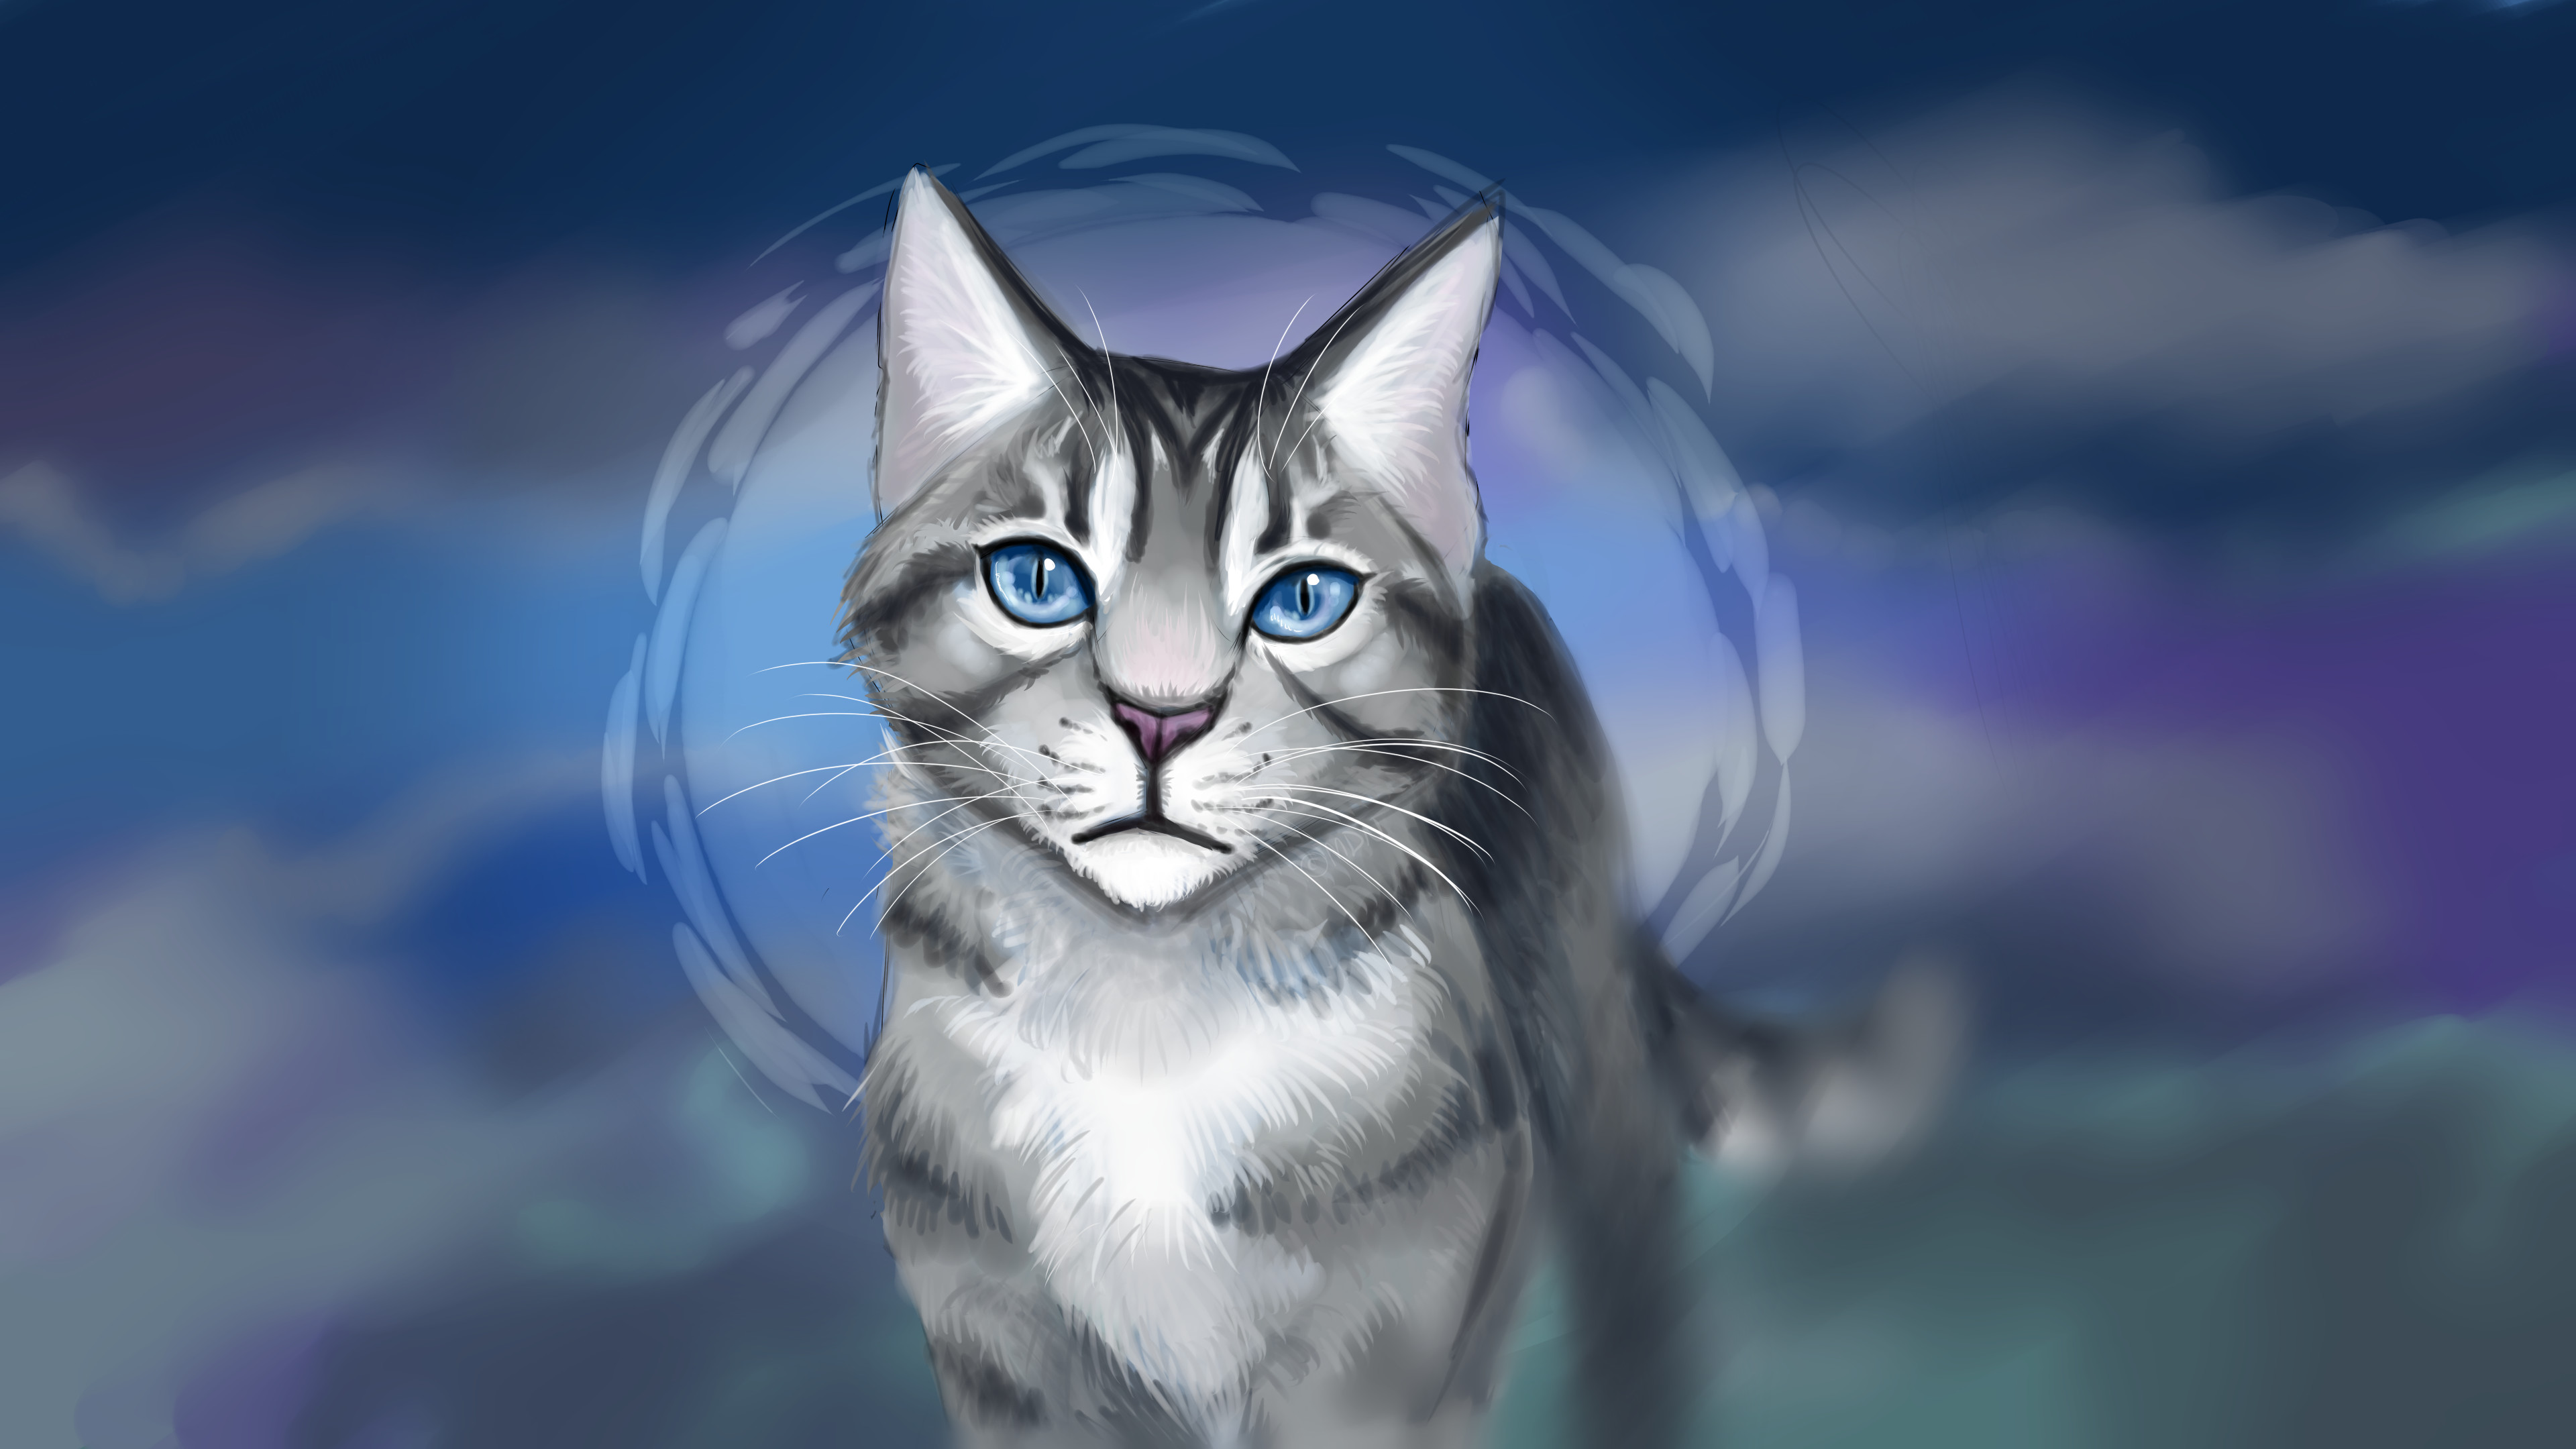 Download Free Warrior Cats Backgrounds  PixelsTalkNet